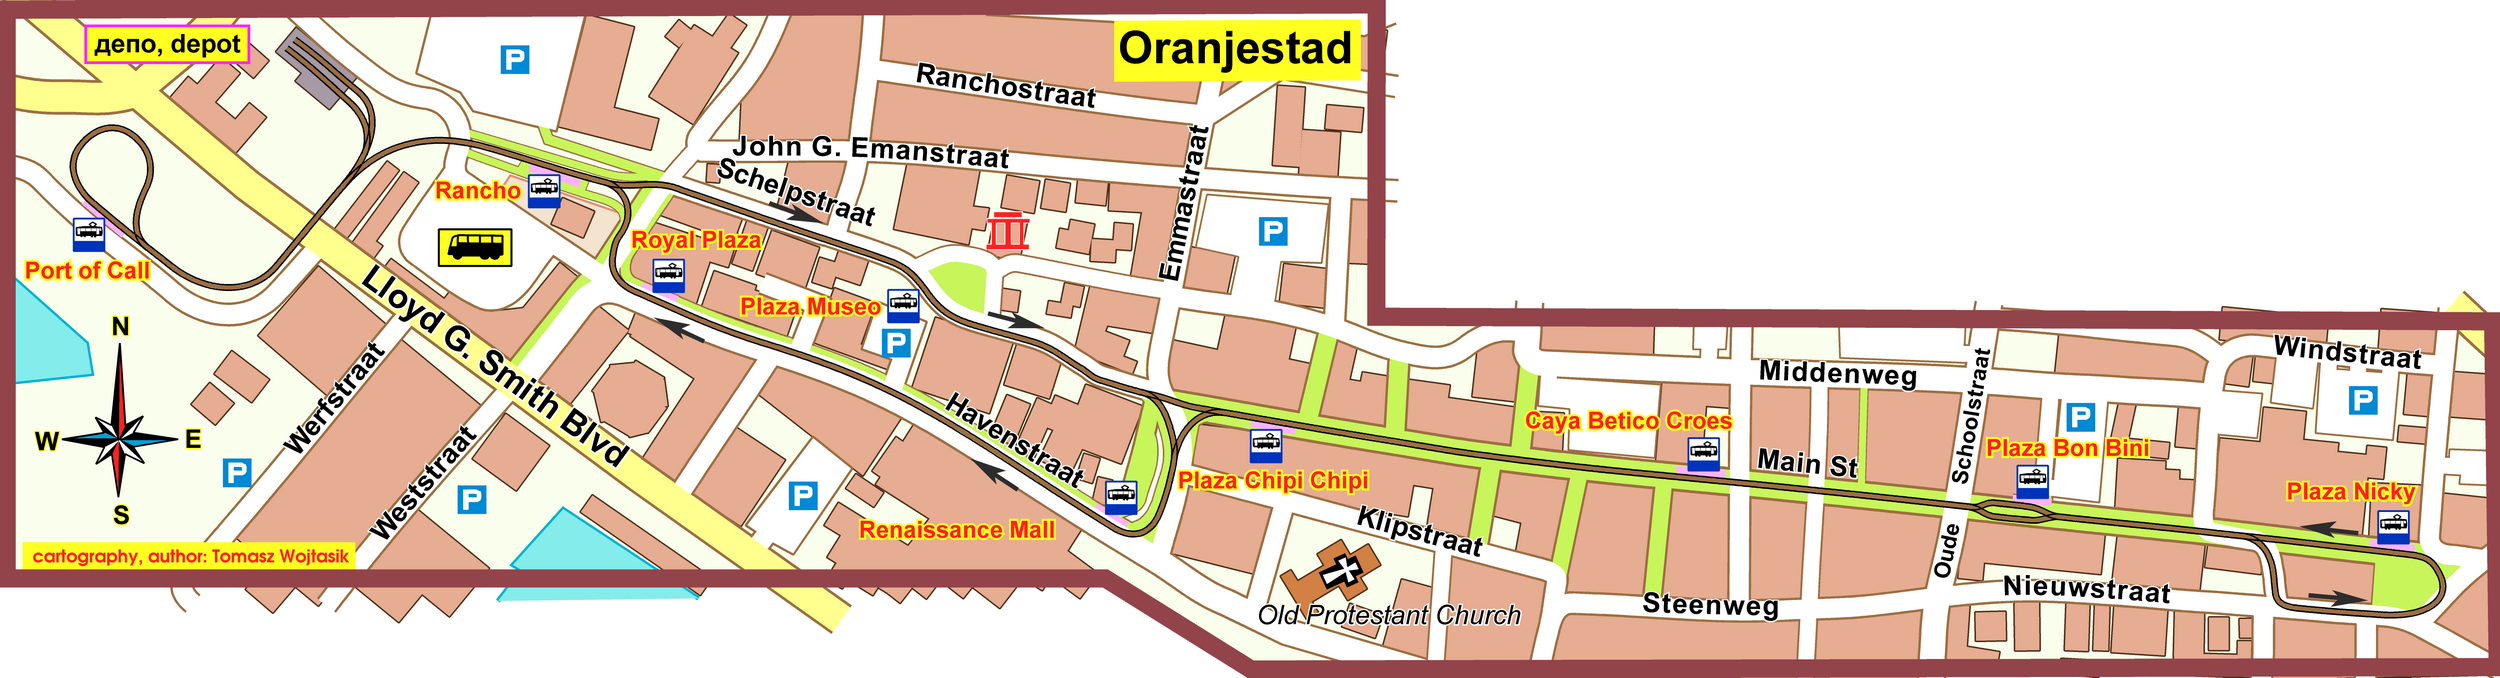 Oranjestad — Maps